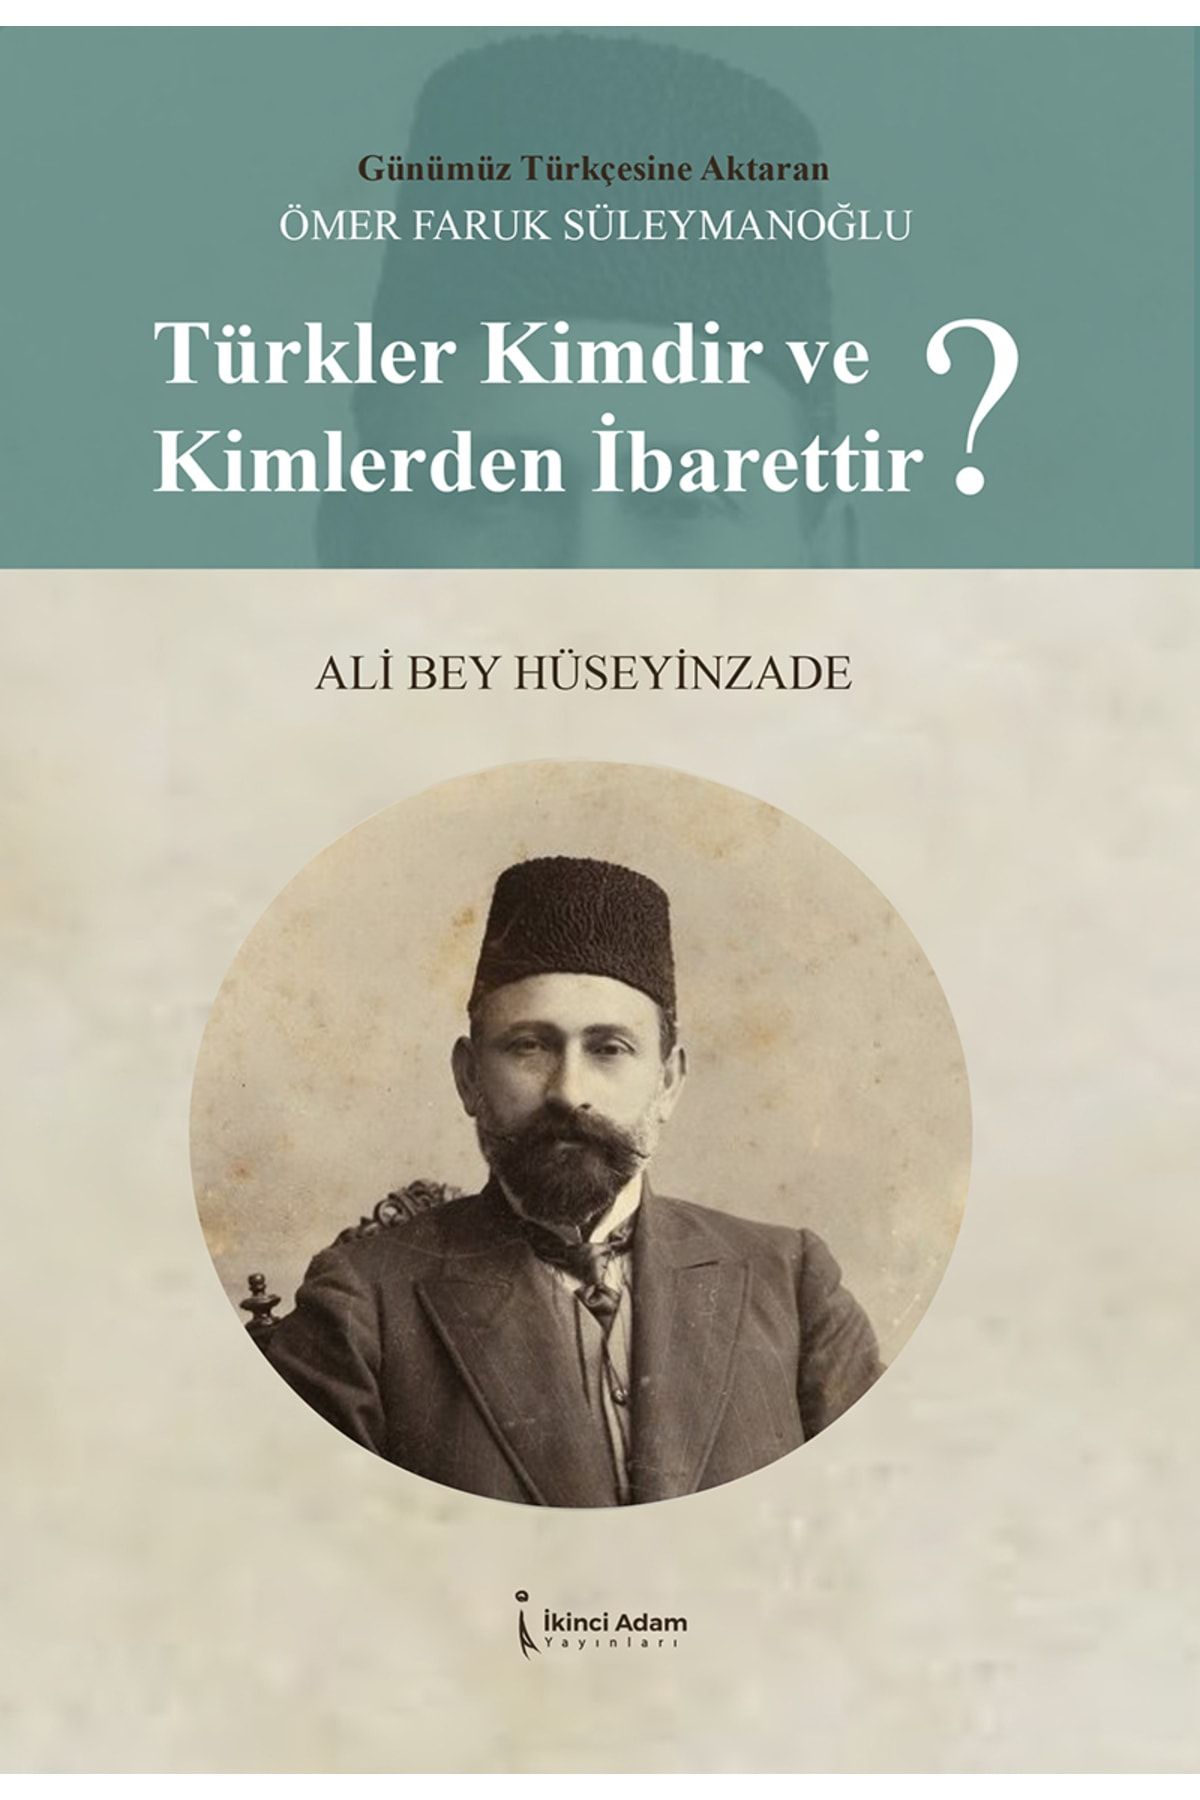 İkinci Adam Yayınları Türkler Kimdir Ve Kimlerden Ibarettir?